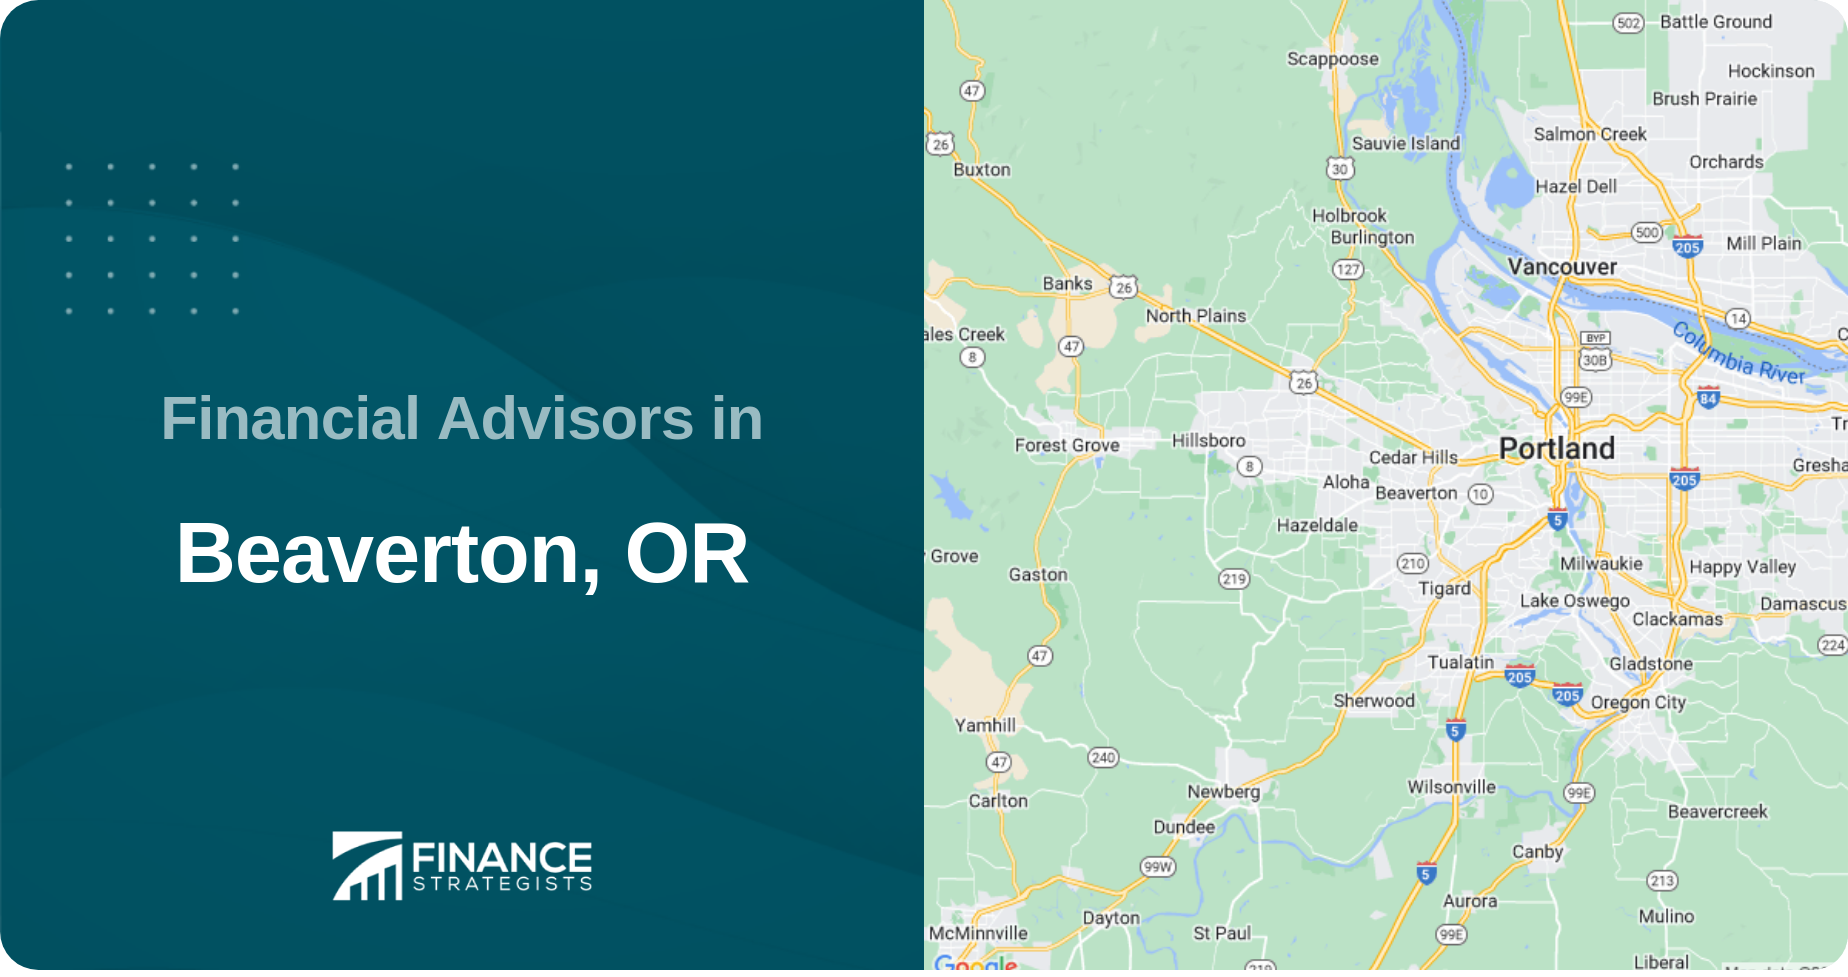 Financial Advisors in Beaverton, OR